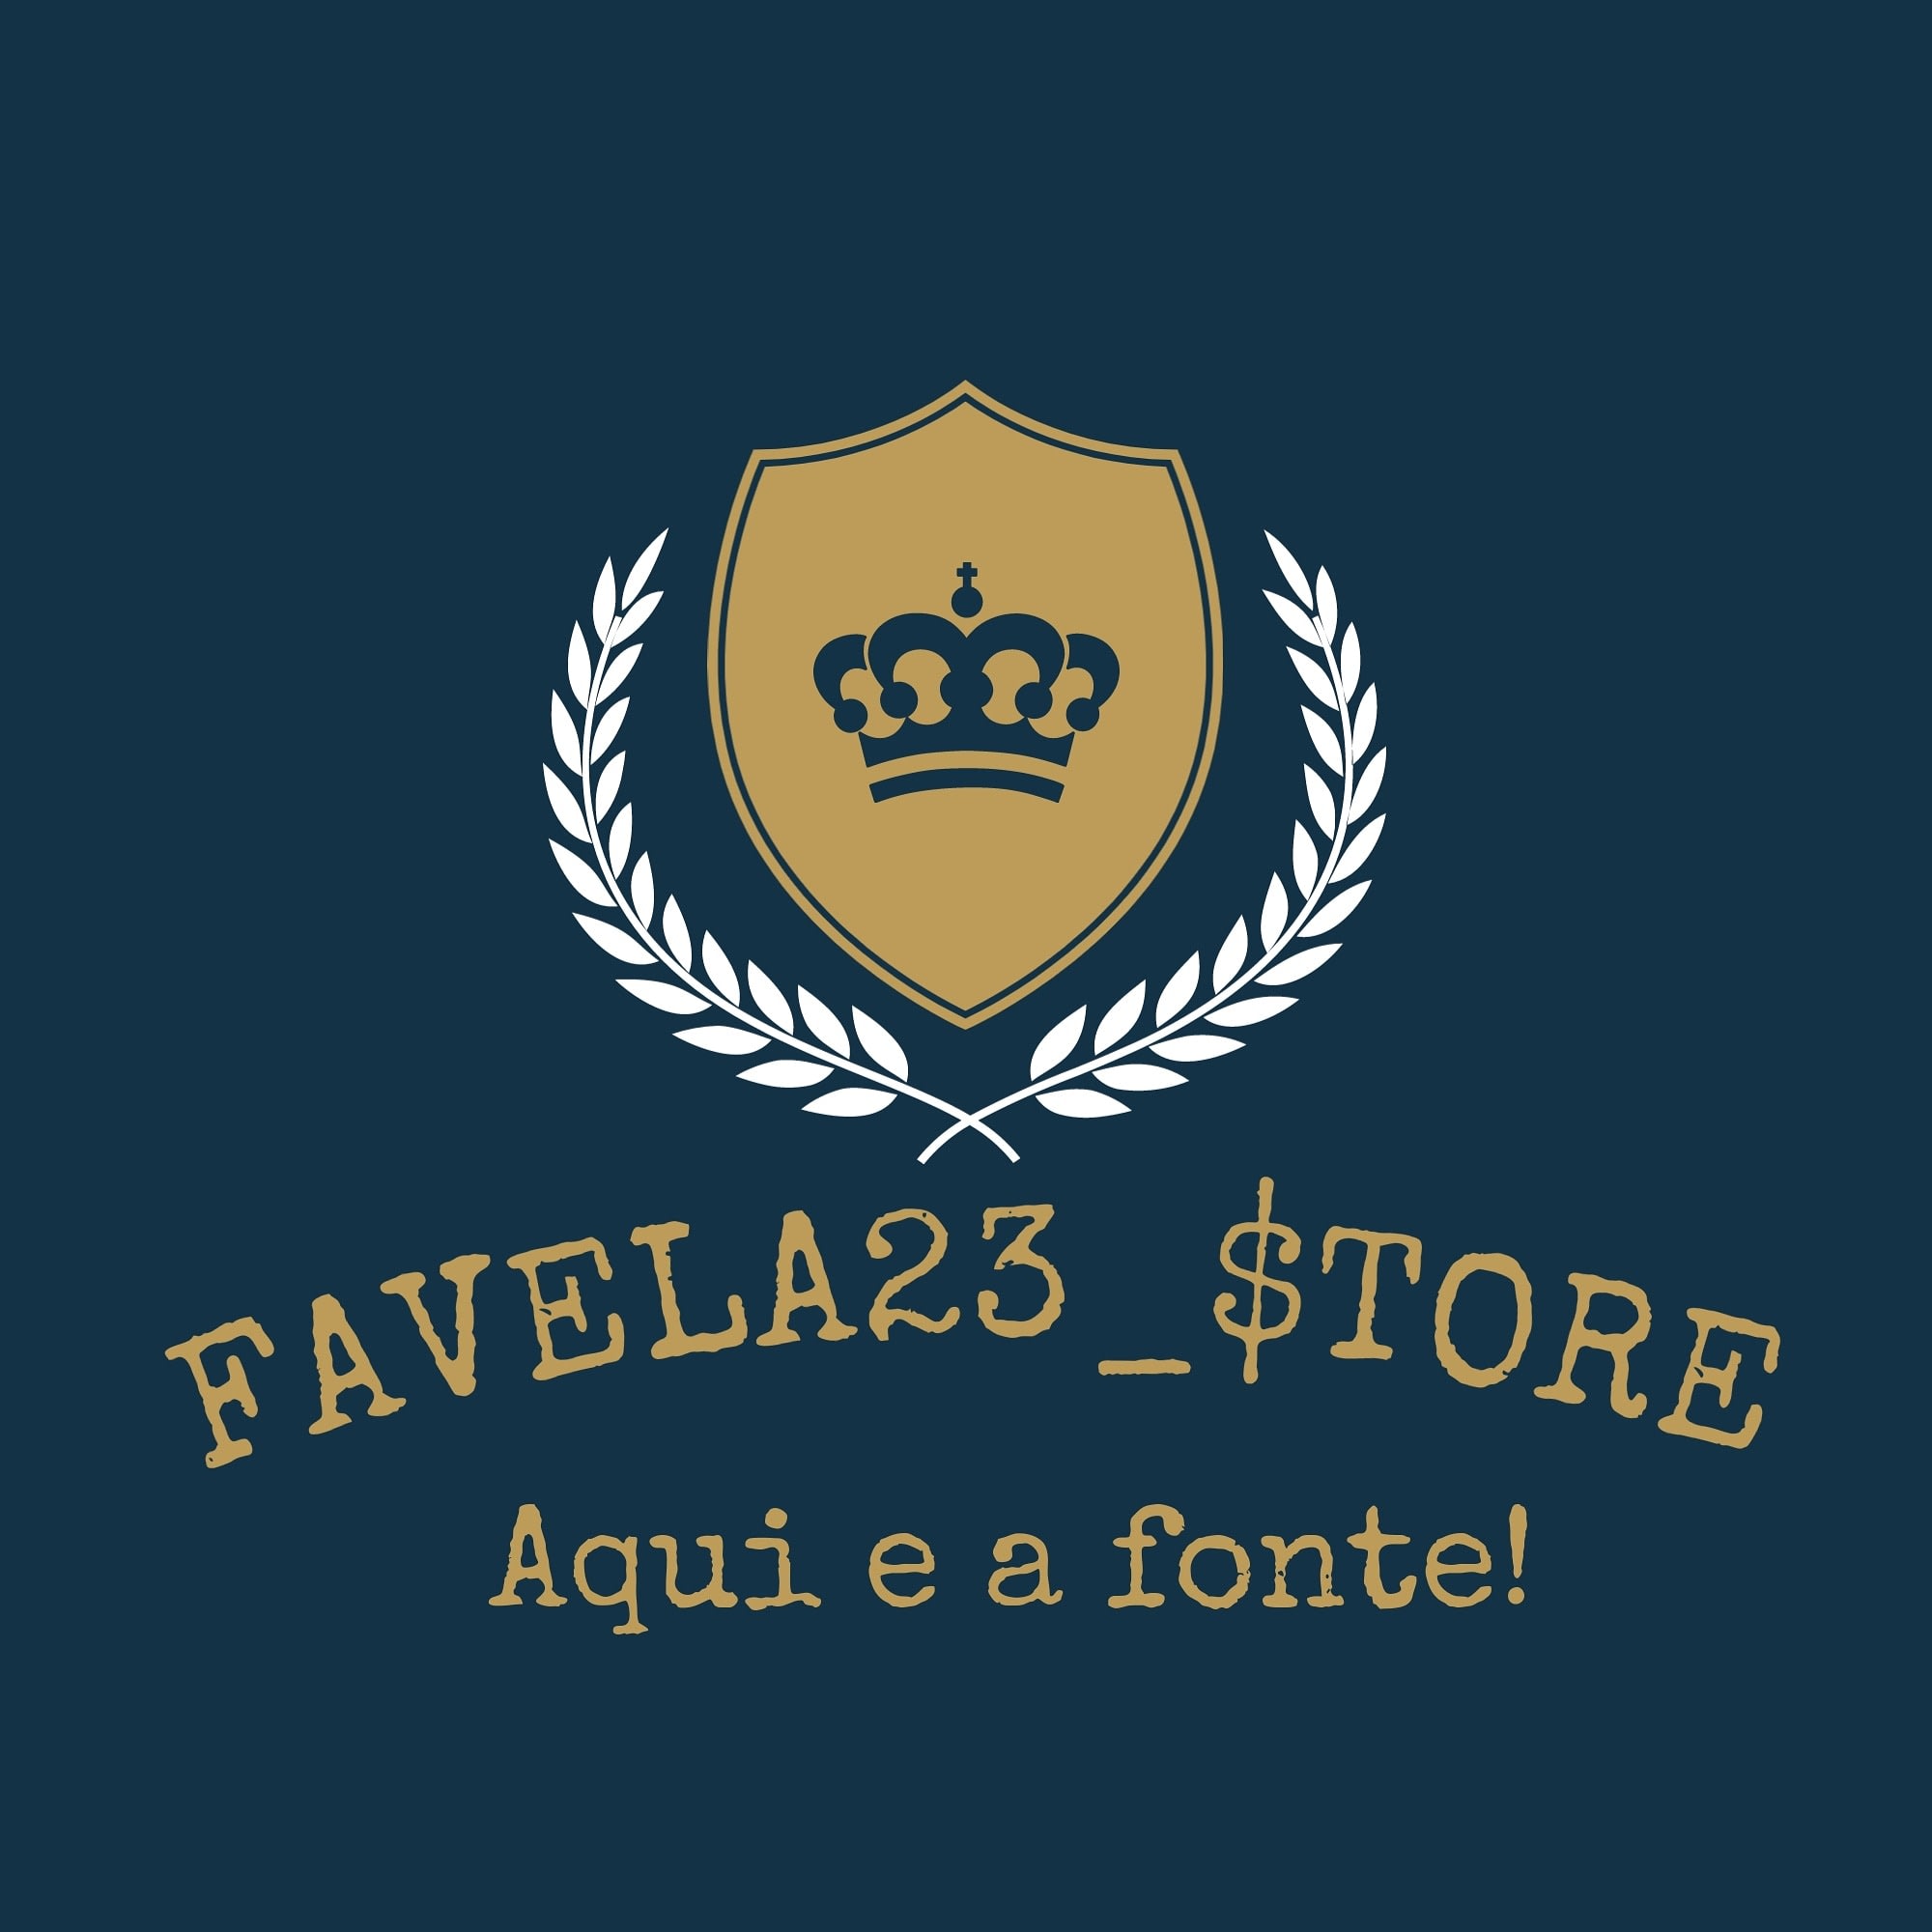 Favela23 Store